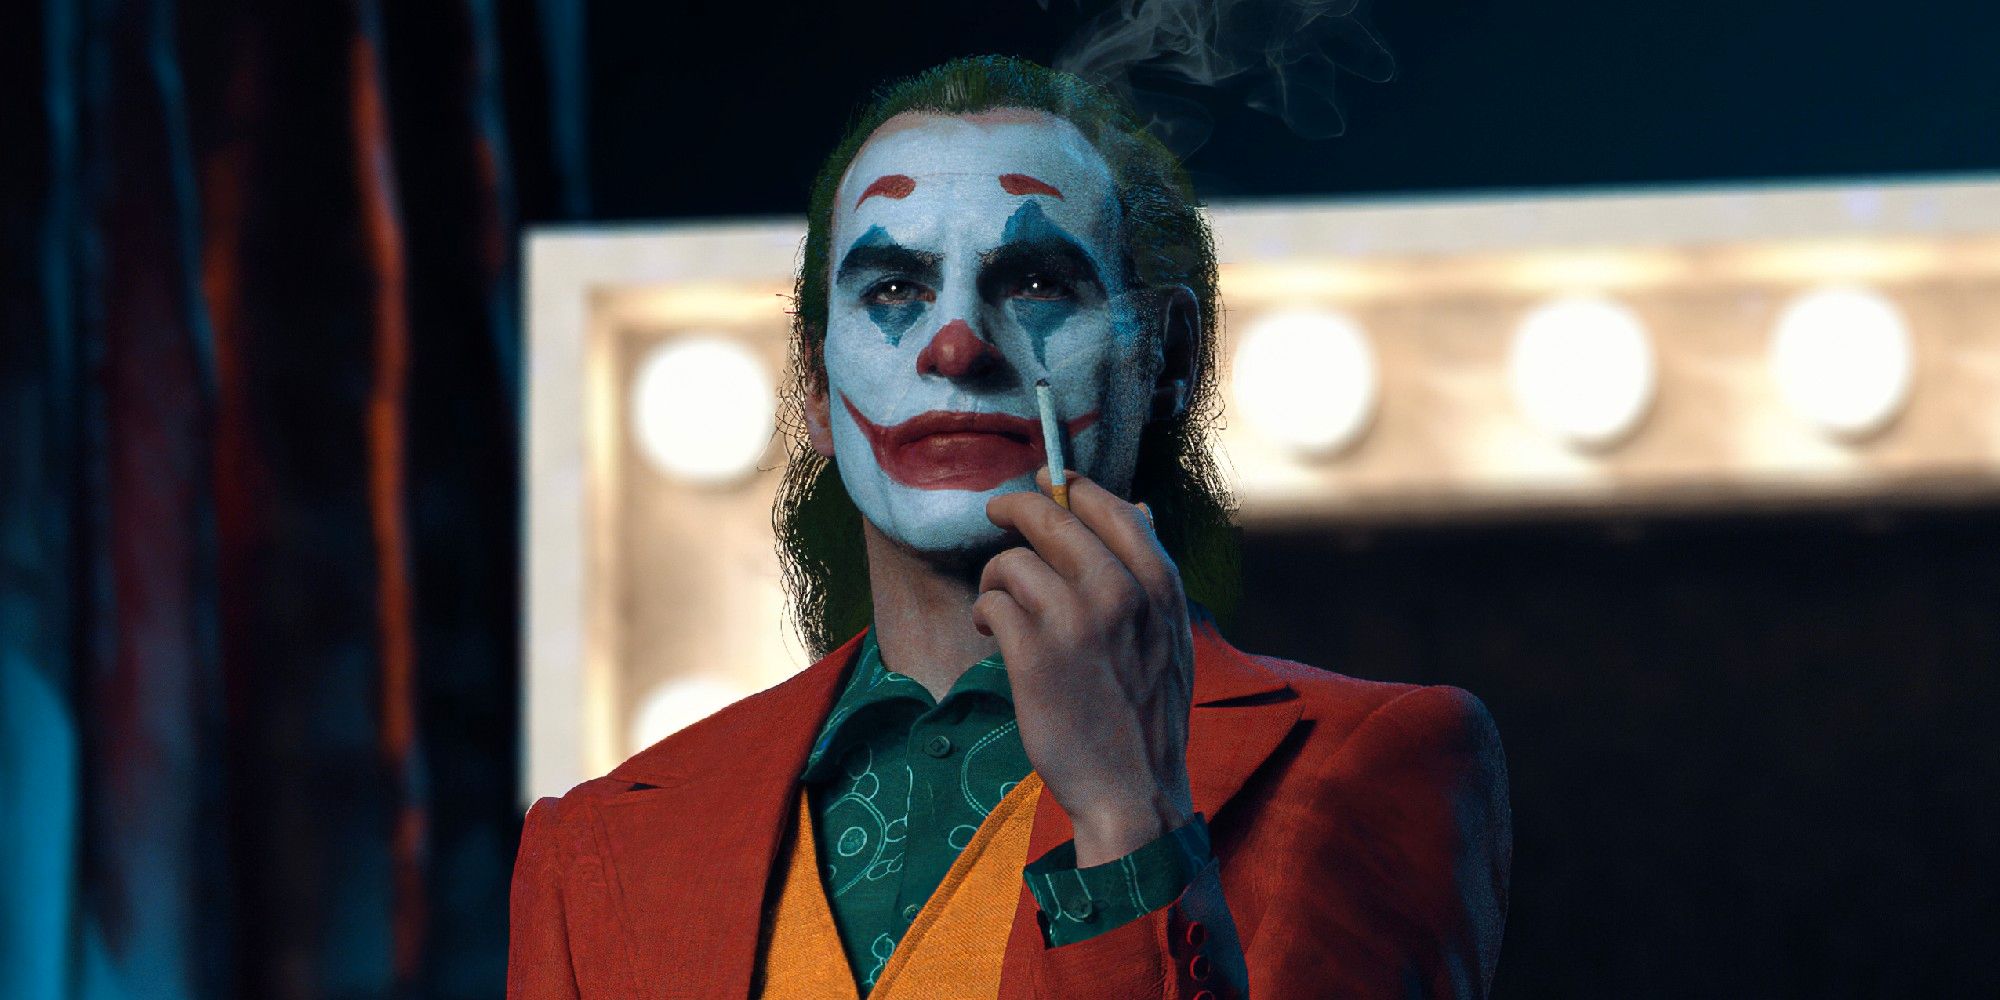 Joker 2: DC Movie obtiene una actualización de desarrollo positivo en un nuevo informe